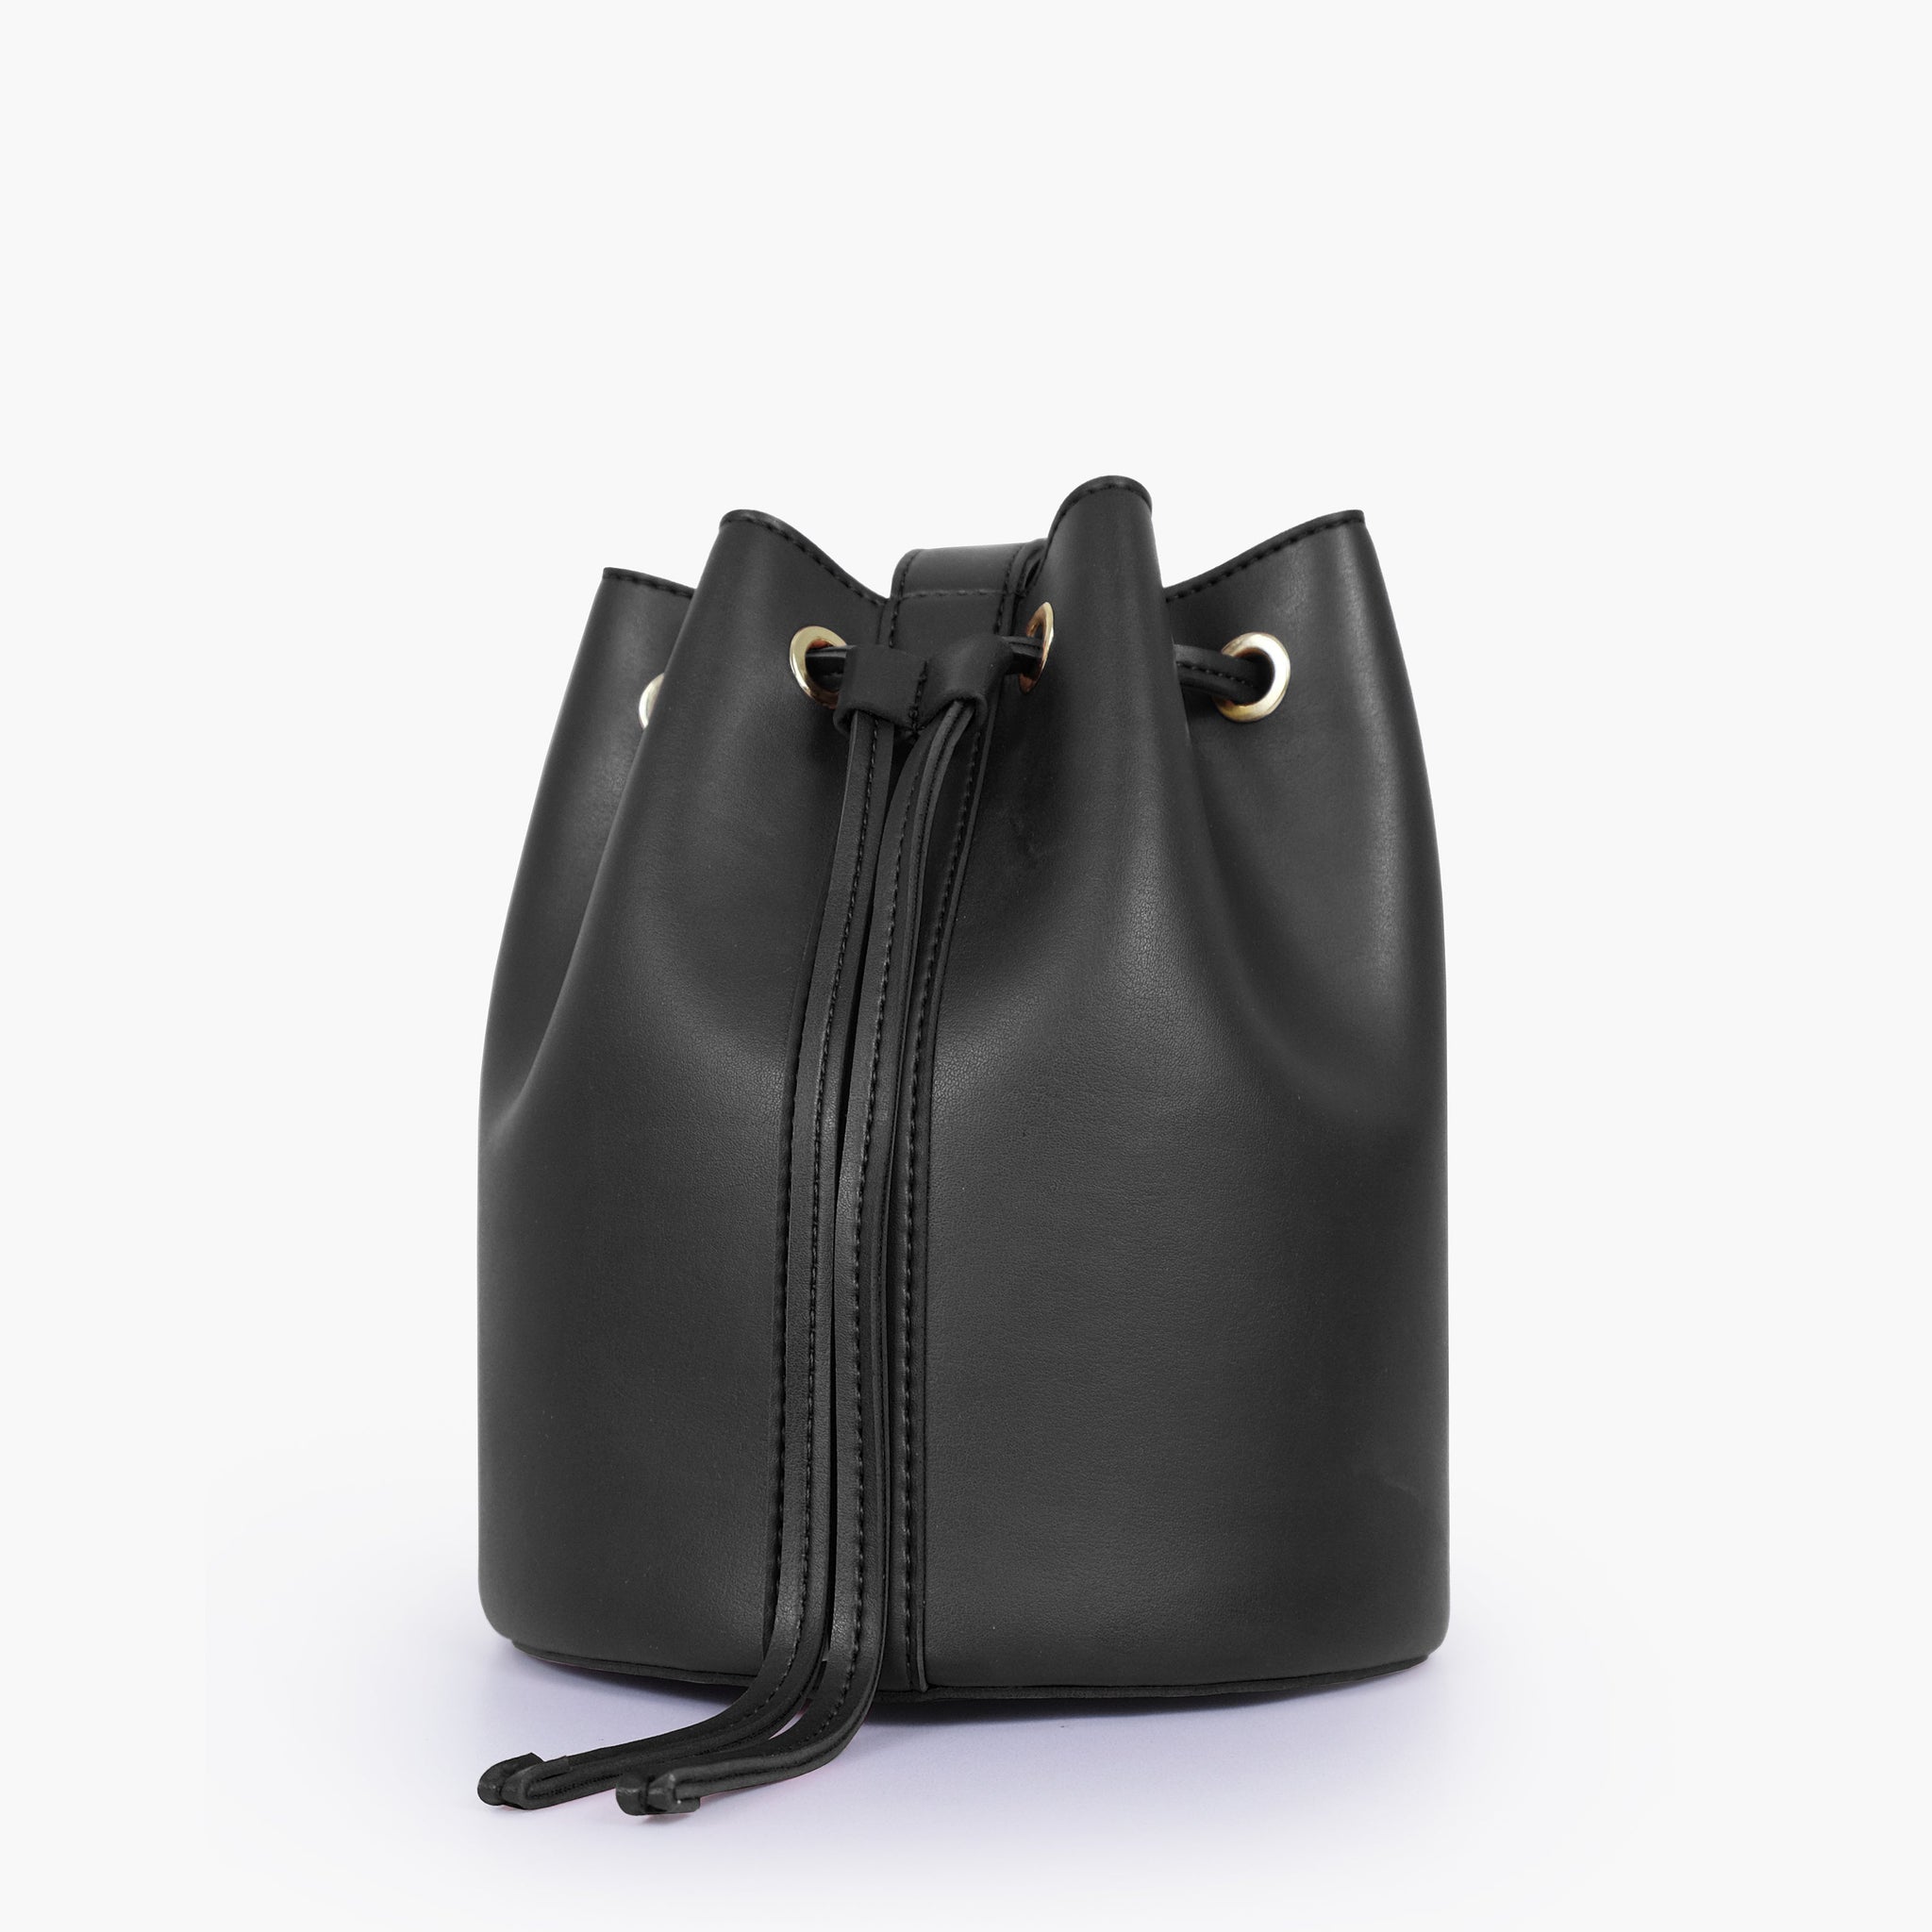 Buy Black Loop Handle Bucket Bag - Black in Pakistan